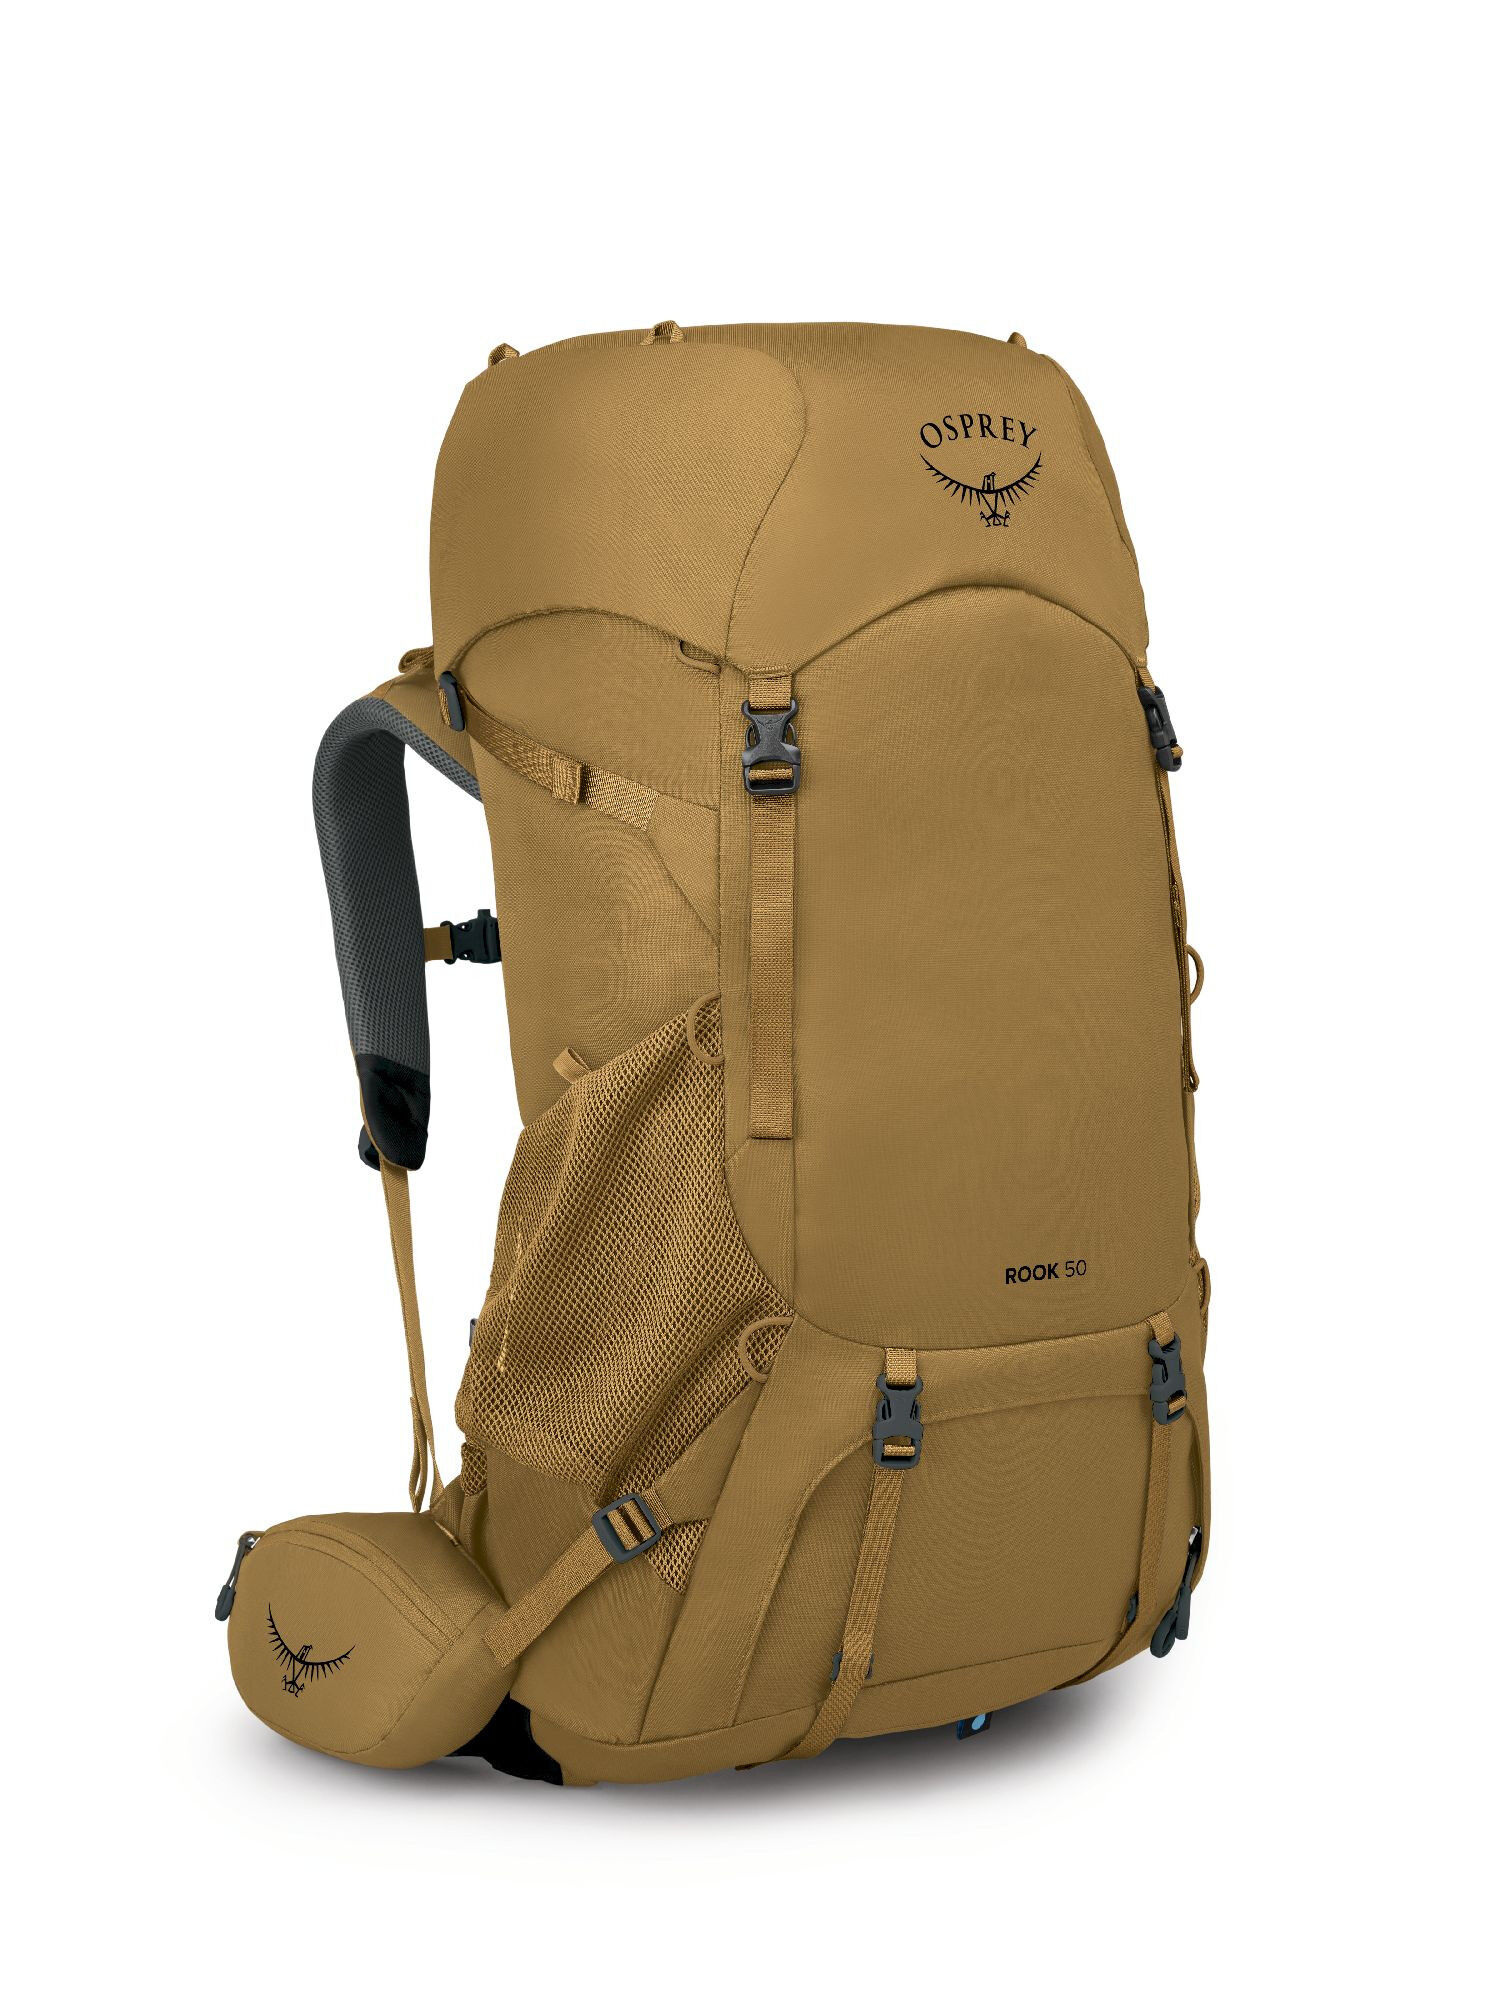 Osprey Rook 50 - Hiking backpack - Men's | Hardloop